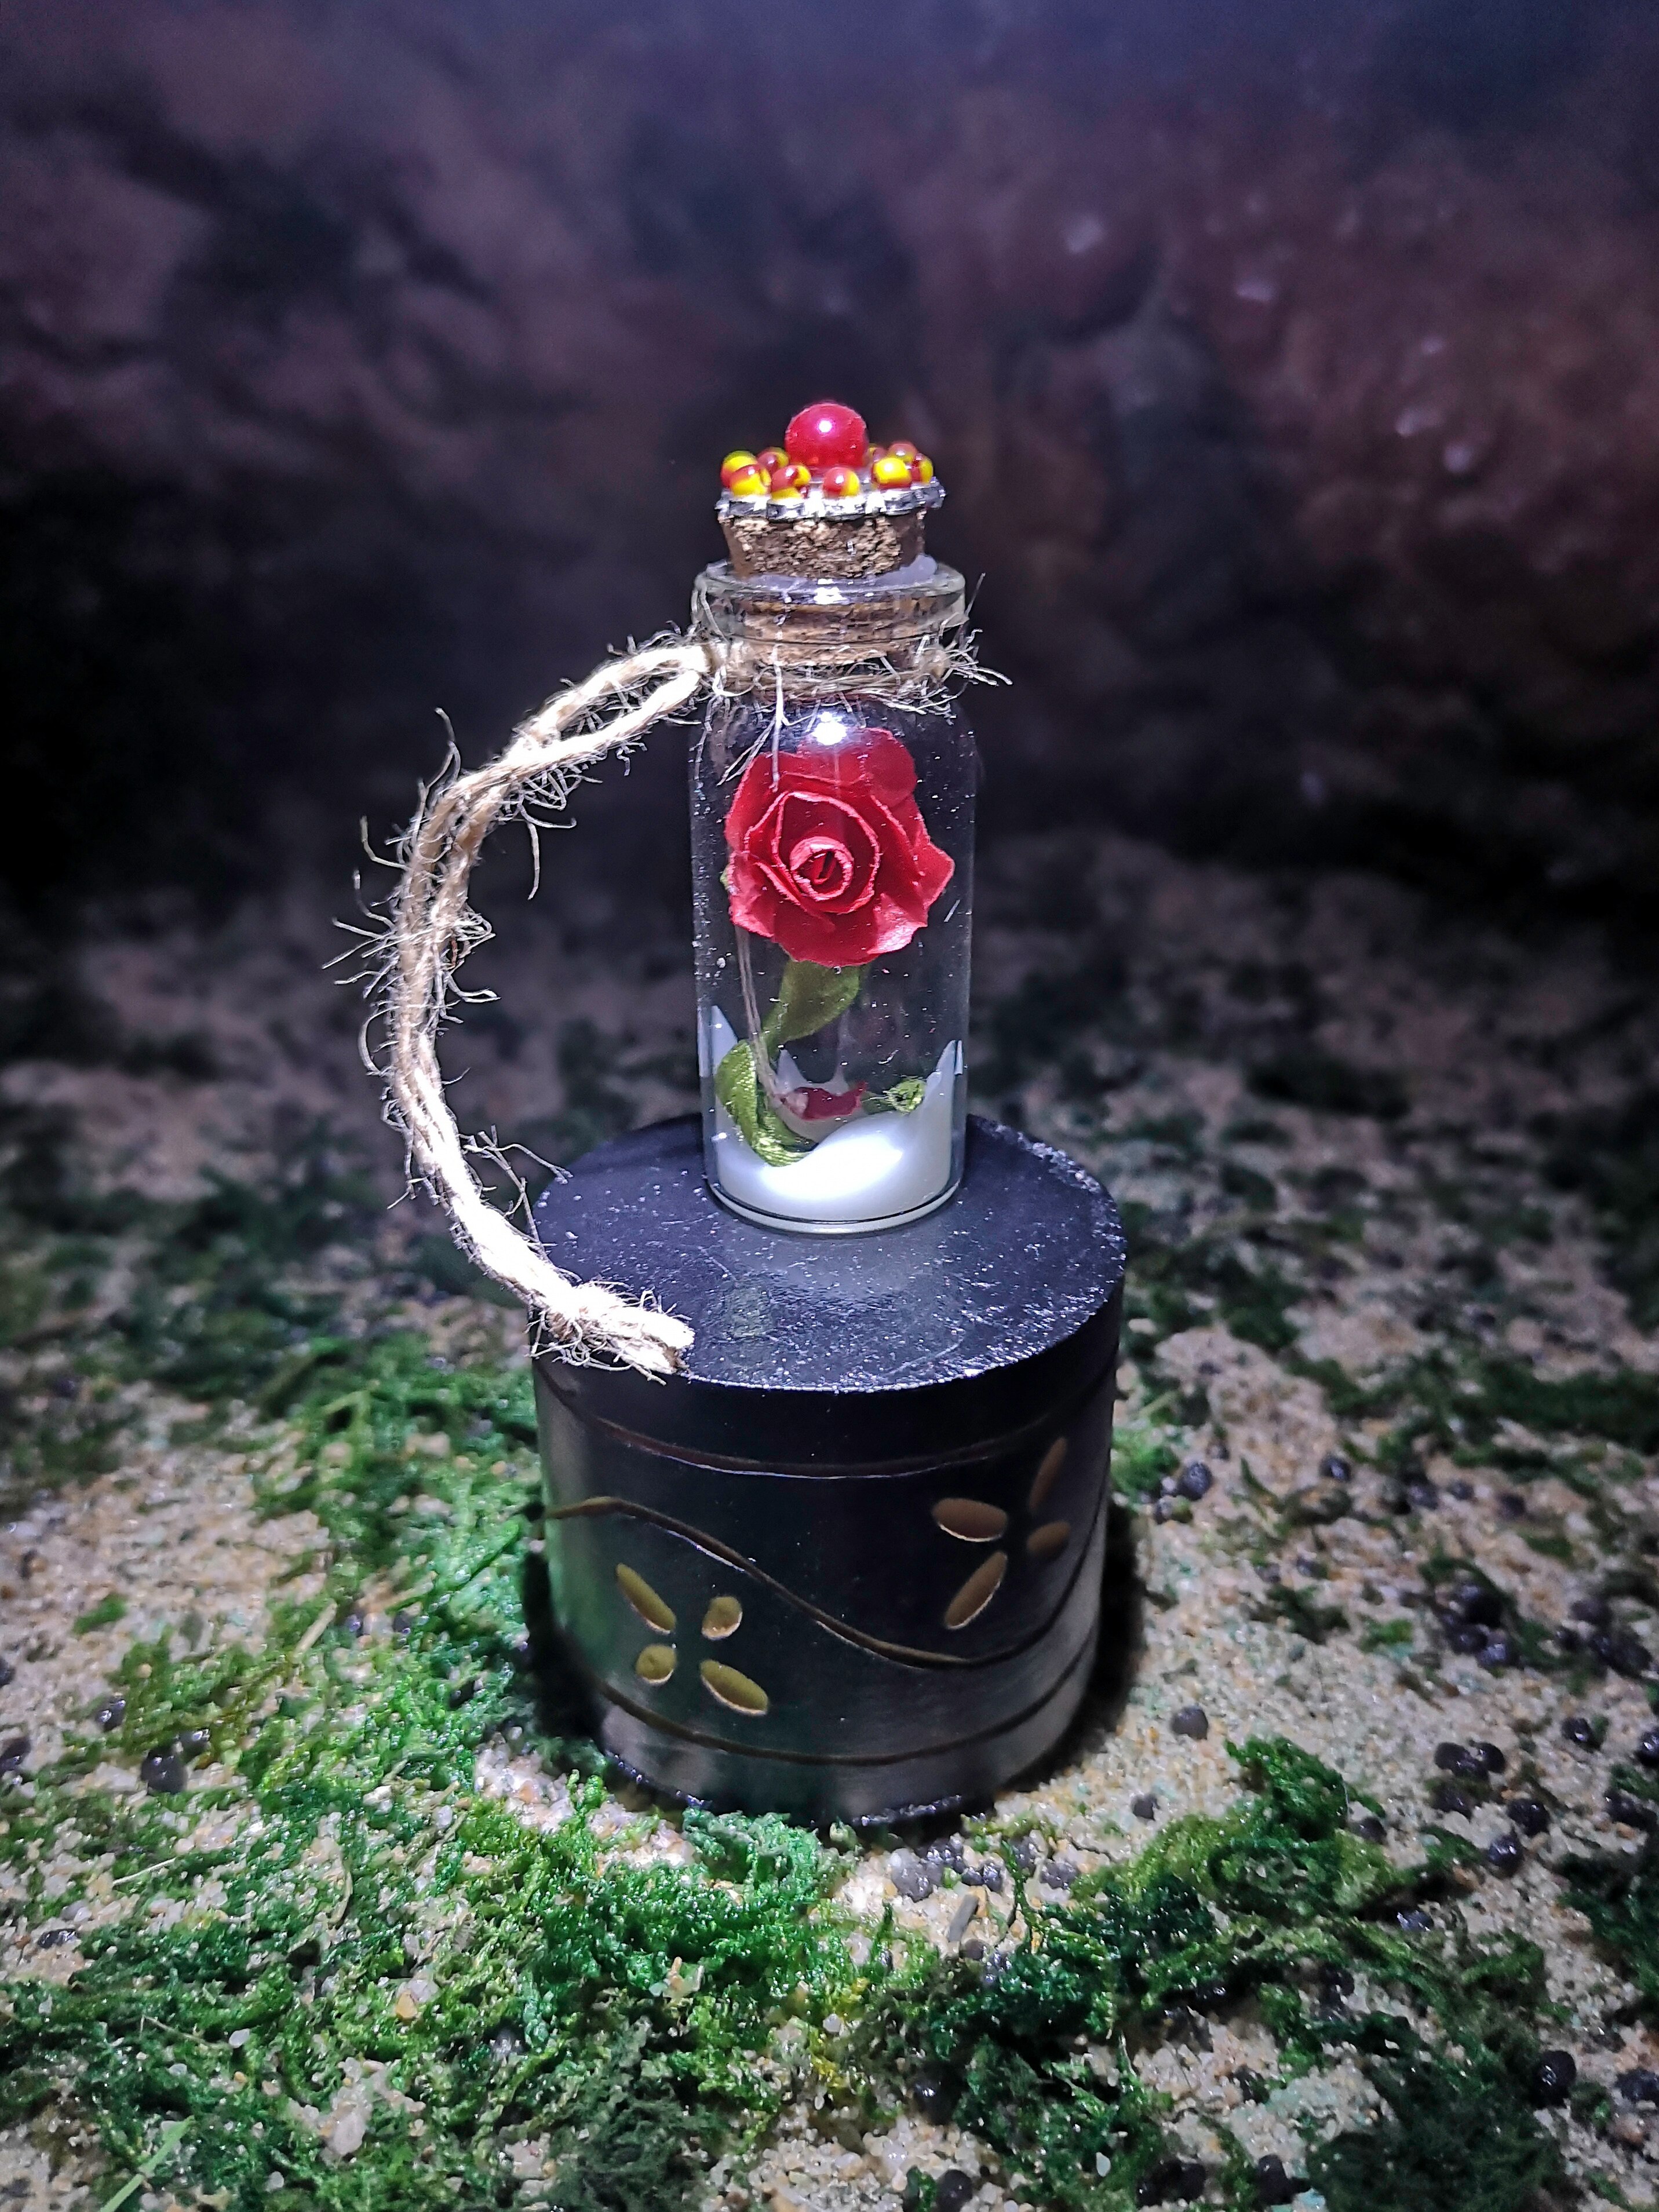 Eeuwige Rose. Tarrito Met Eeuwige Rose. Het Schijnt In Het Donker. Pot Met Een Eeuwige Rose Glow In The Dark.